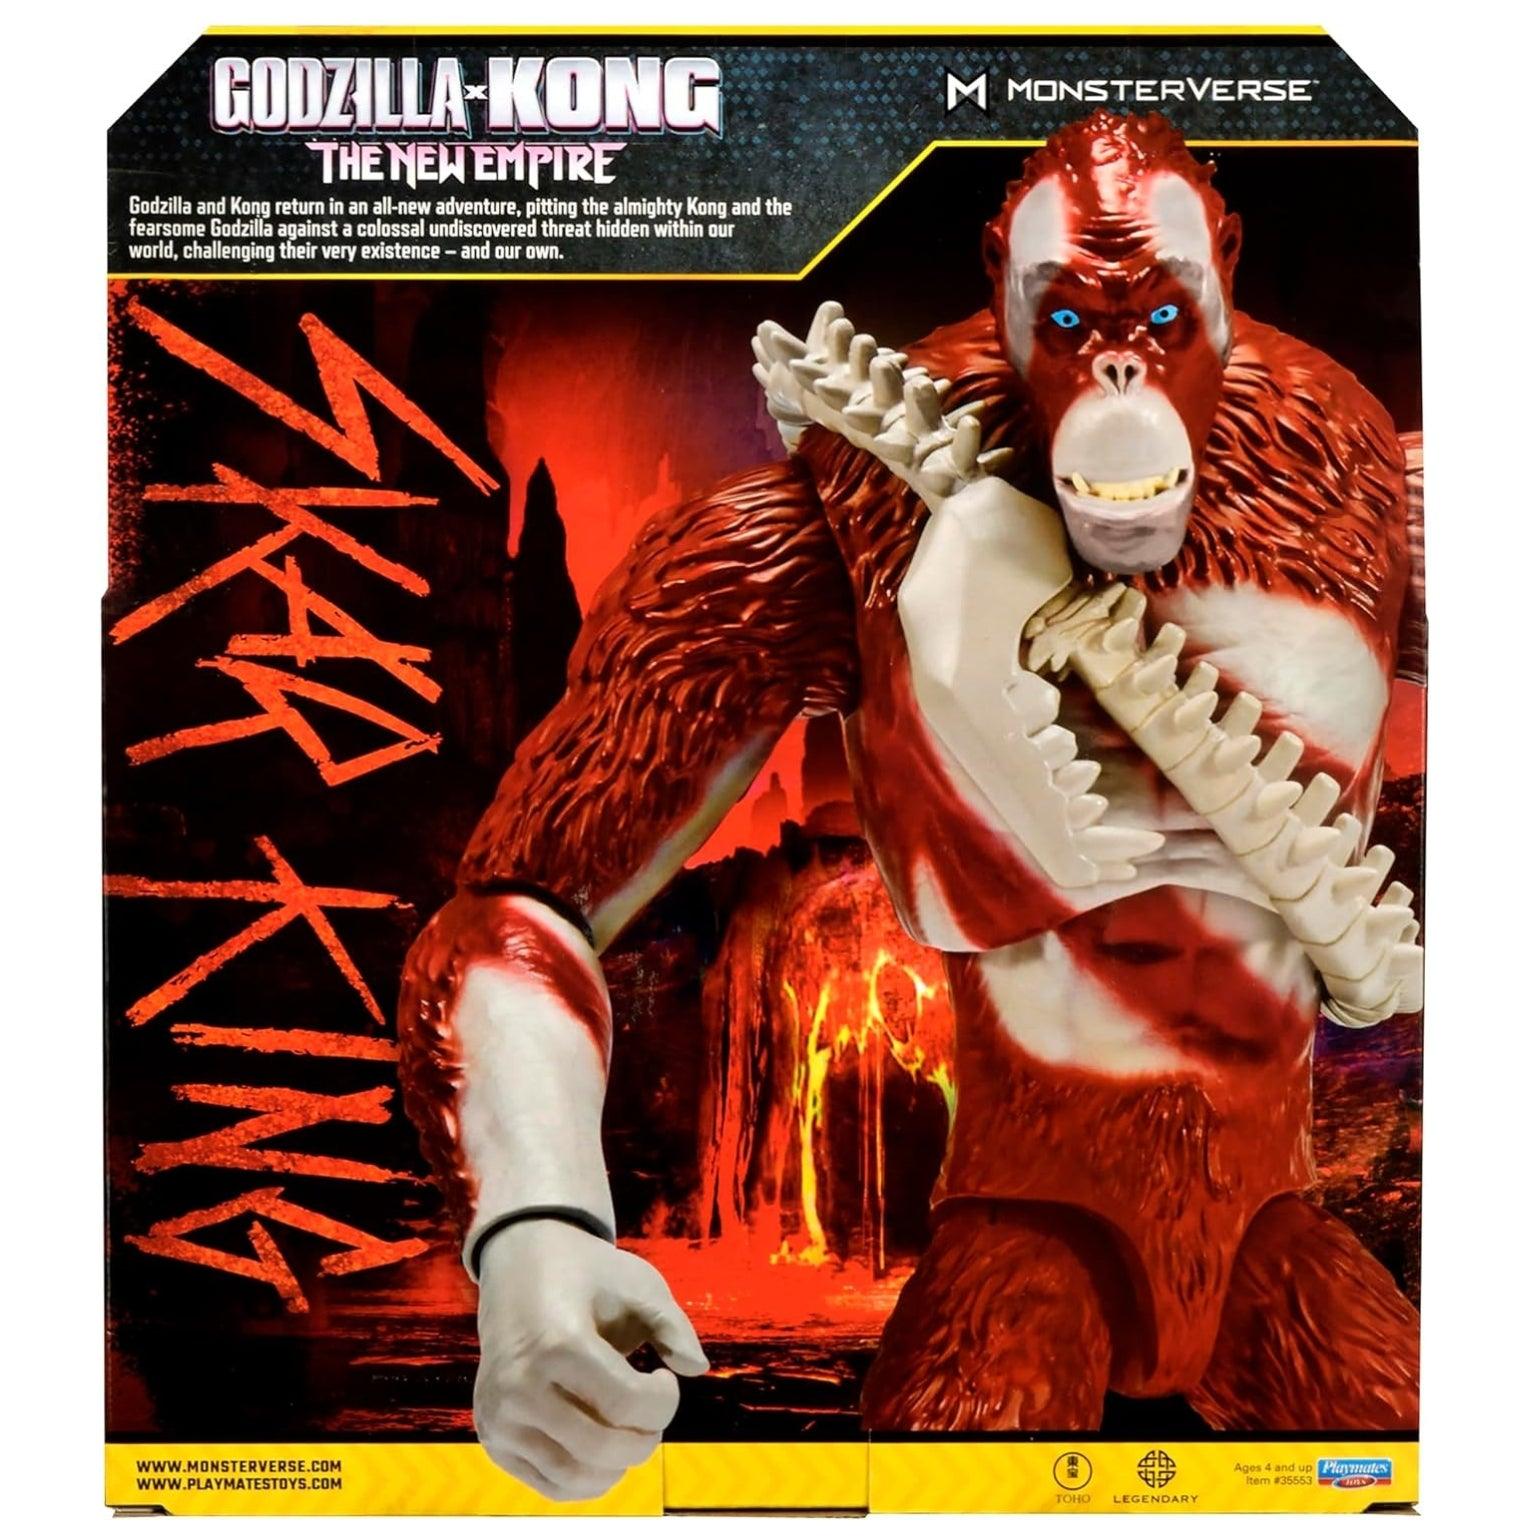 Godzilla x Kong: Skar King Gigante - Brincatoys